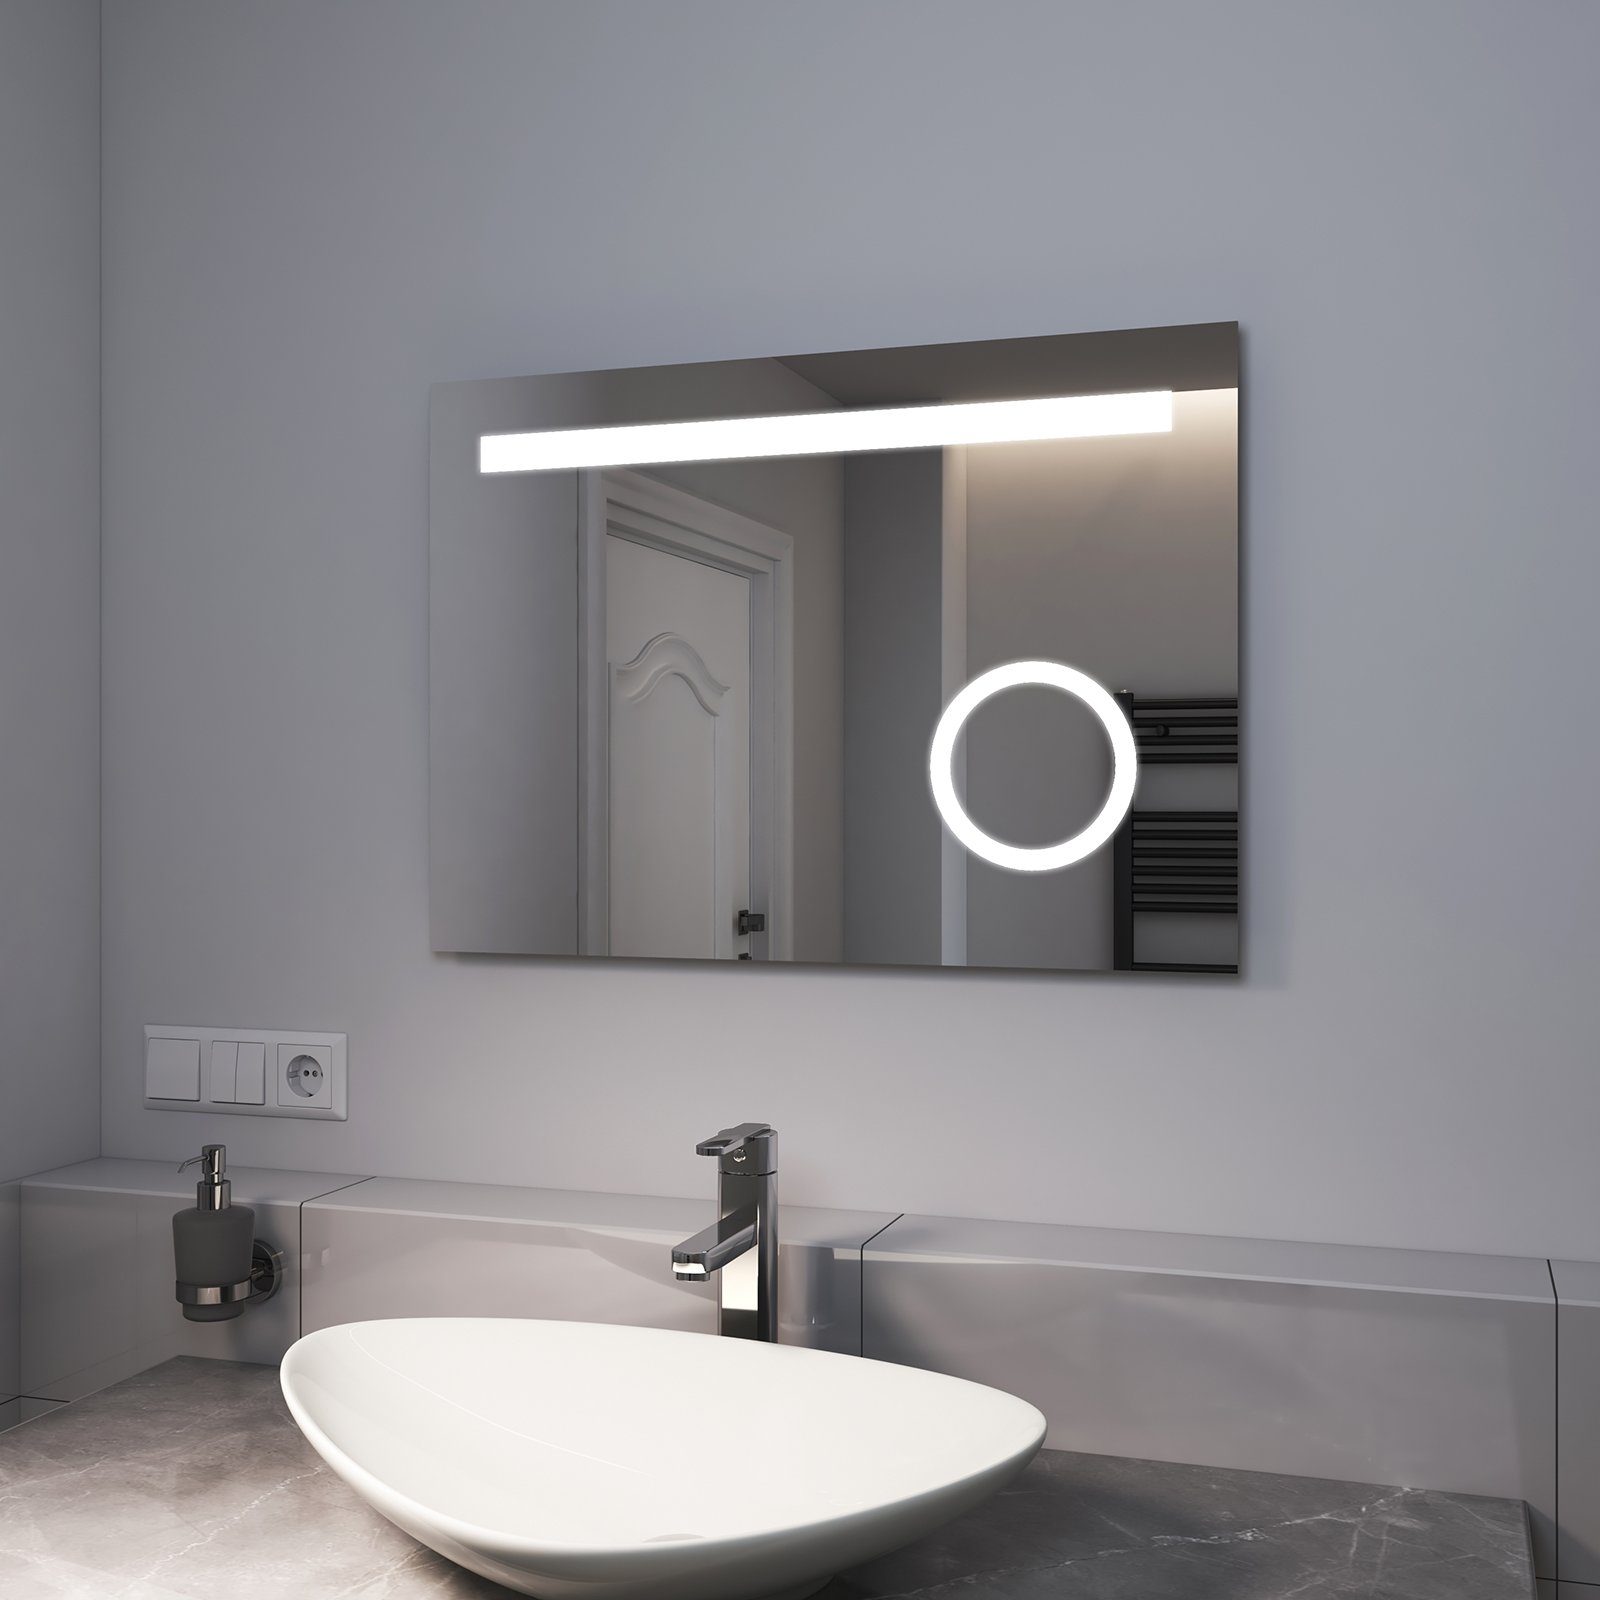 EMKE Badspiegel EMKE LED Badspiegel mit Beleuchtung, LED Wandspiegel, mit  Taste und Beschlagfrei, 2 Lichtfarbe Warmweiß/Kaltweiß